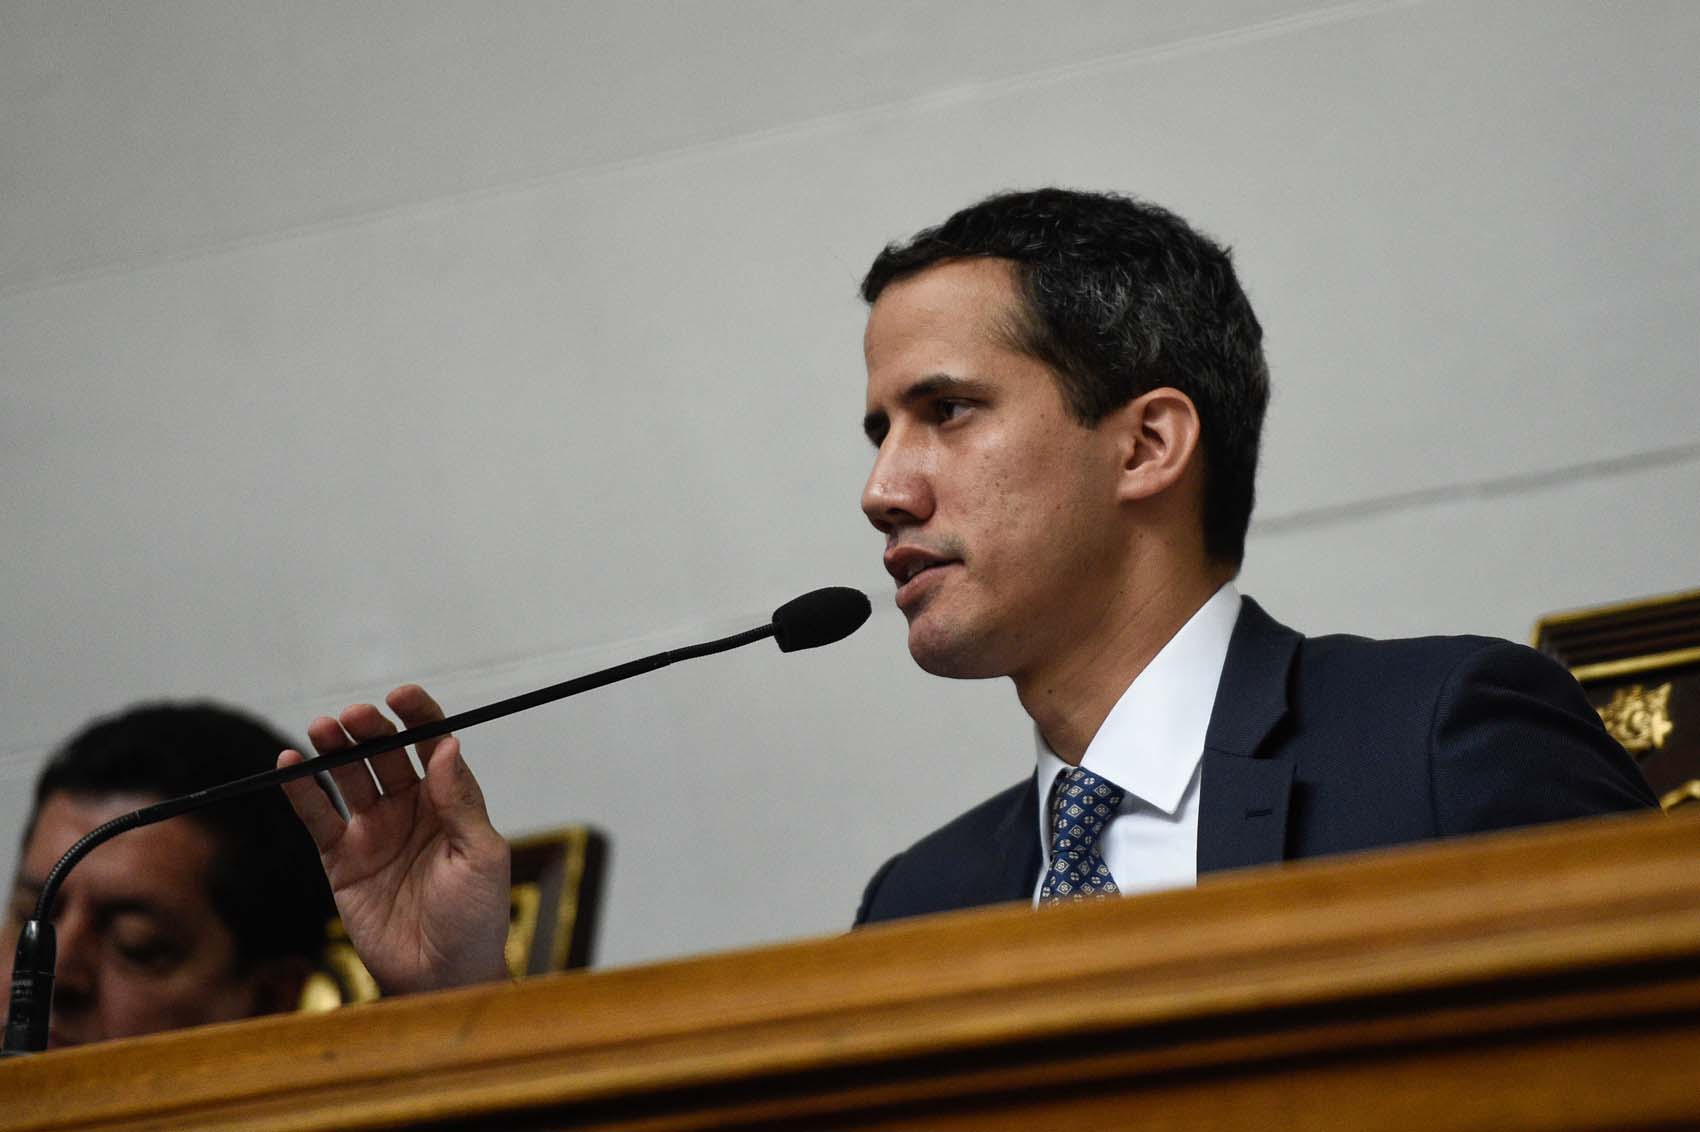 Sánchez respalda a Guaidó para lograr un gobierno de transición y elecciones libres en Venezuela